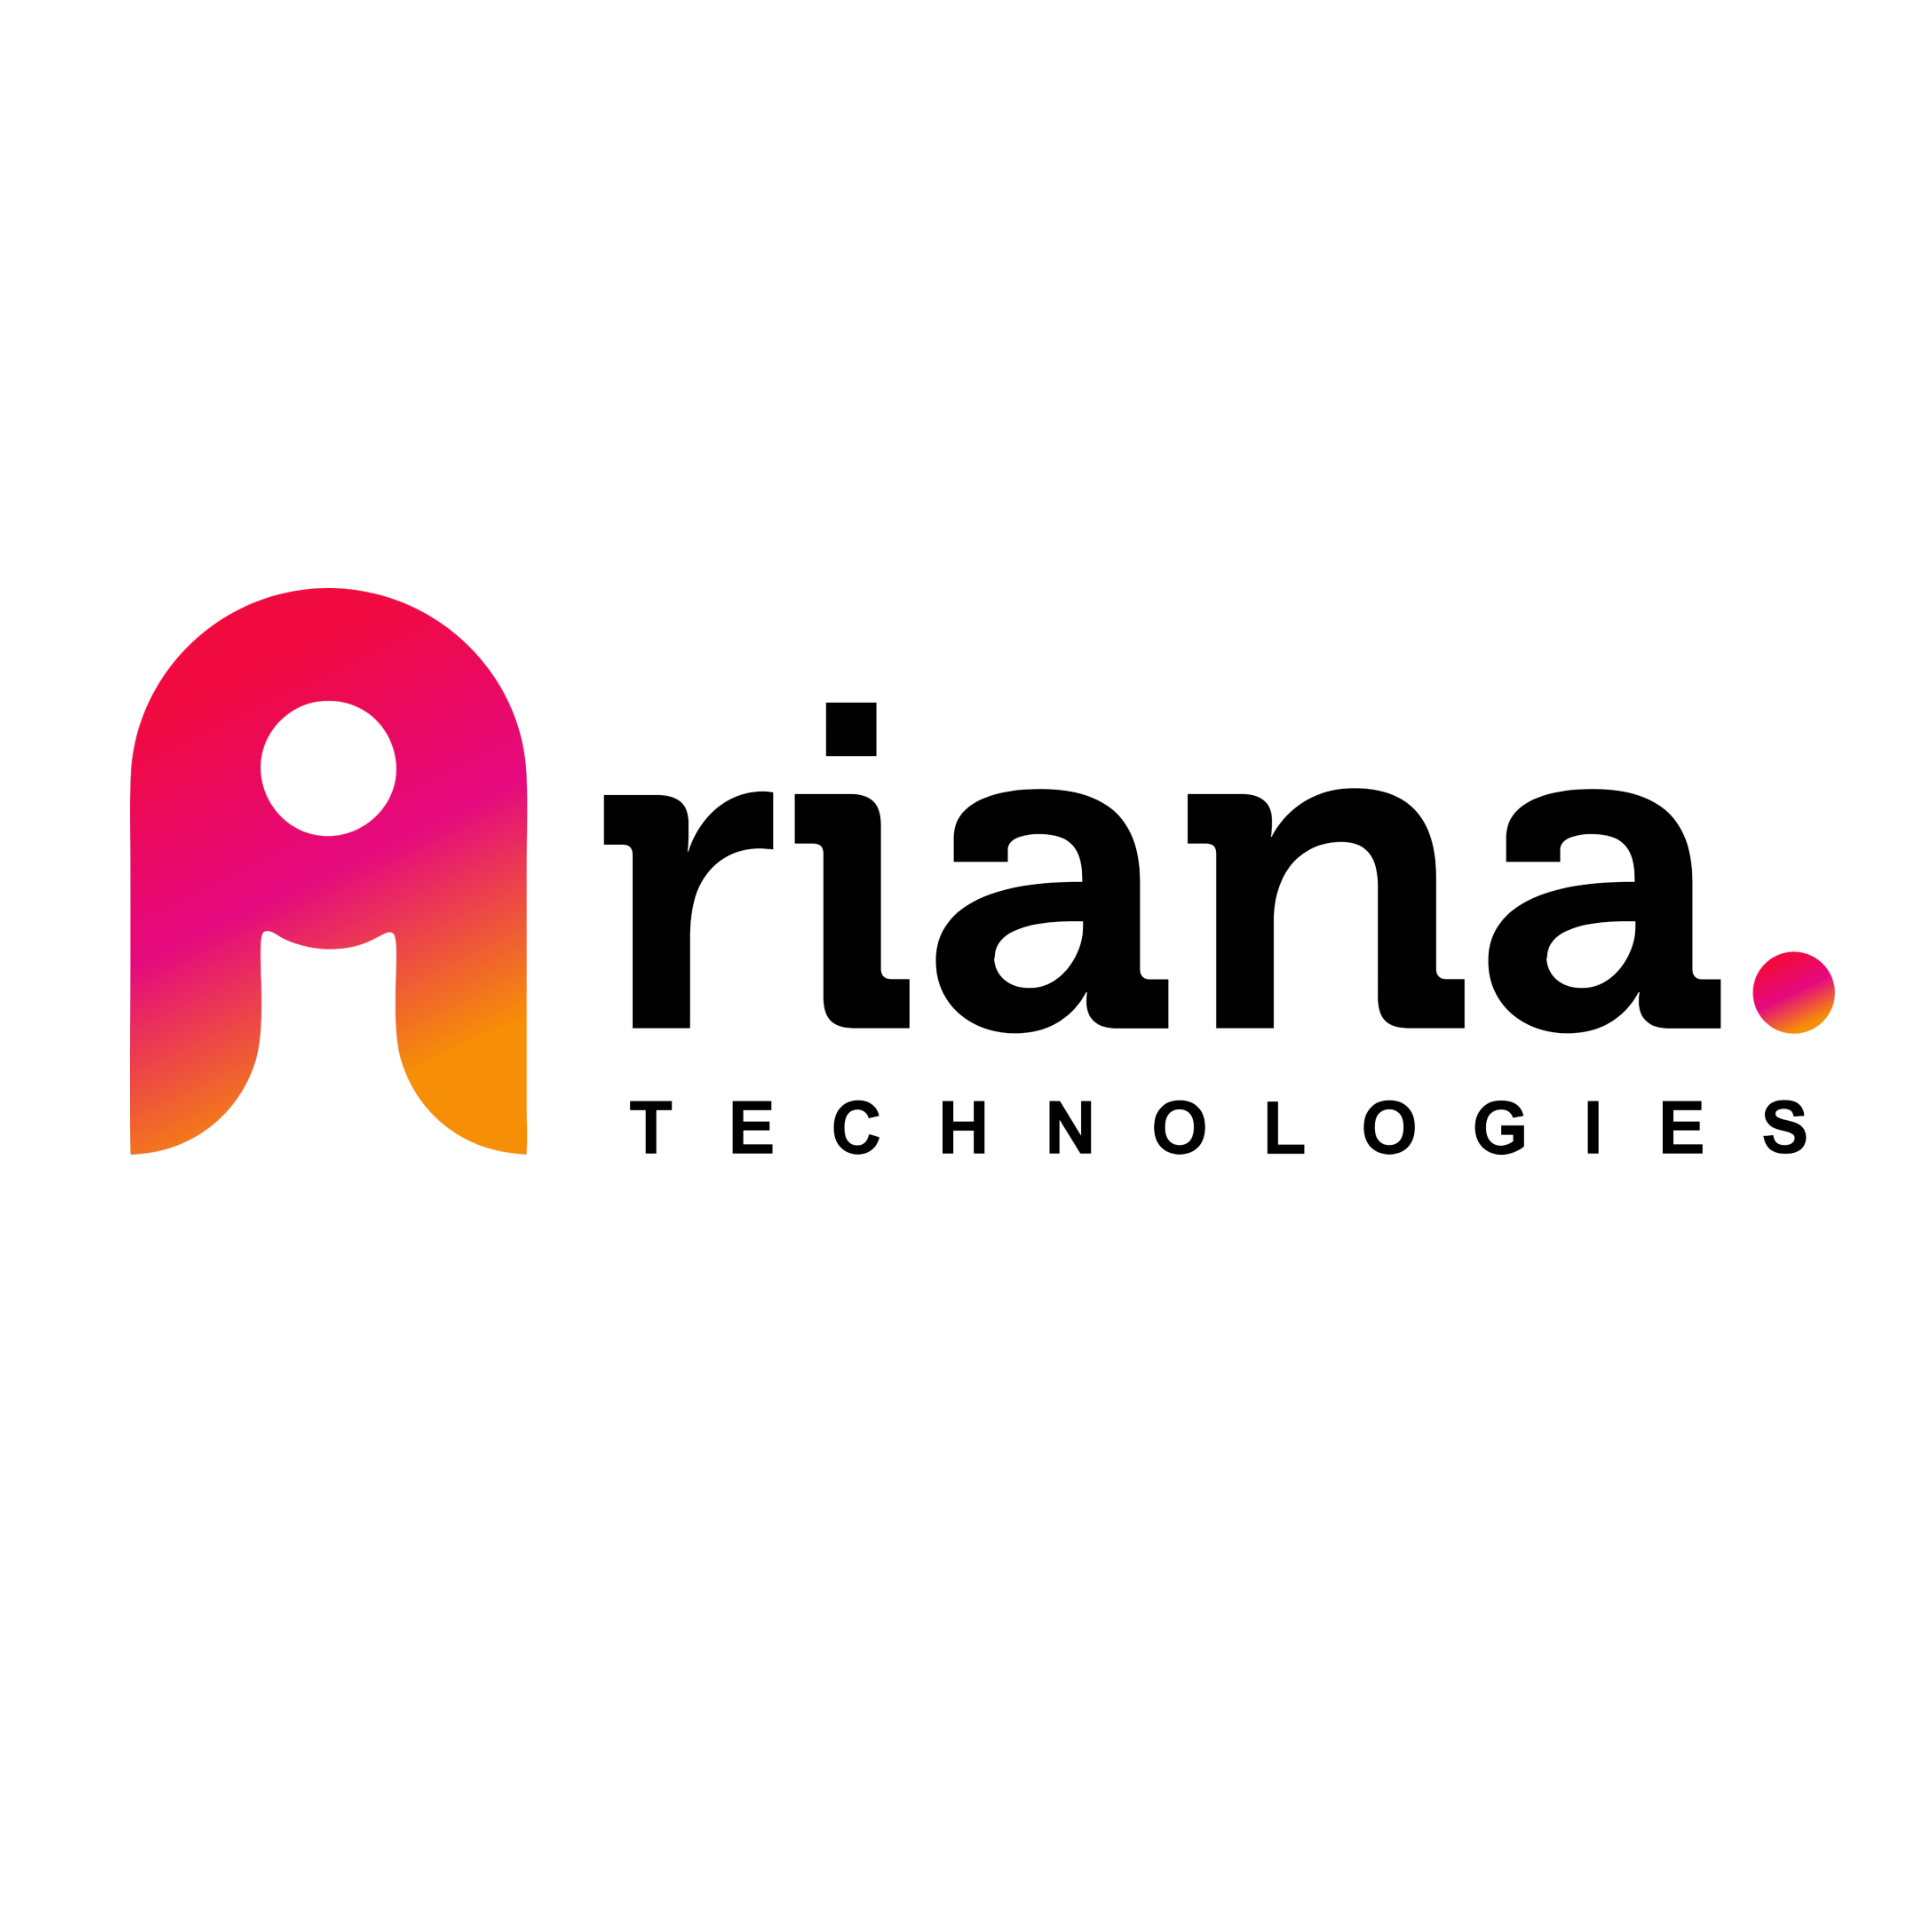 iAriana Technologies Pvt Ltd